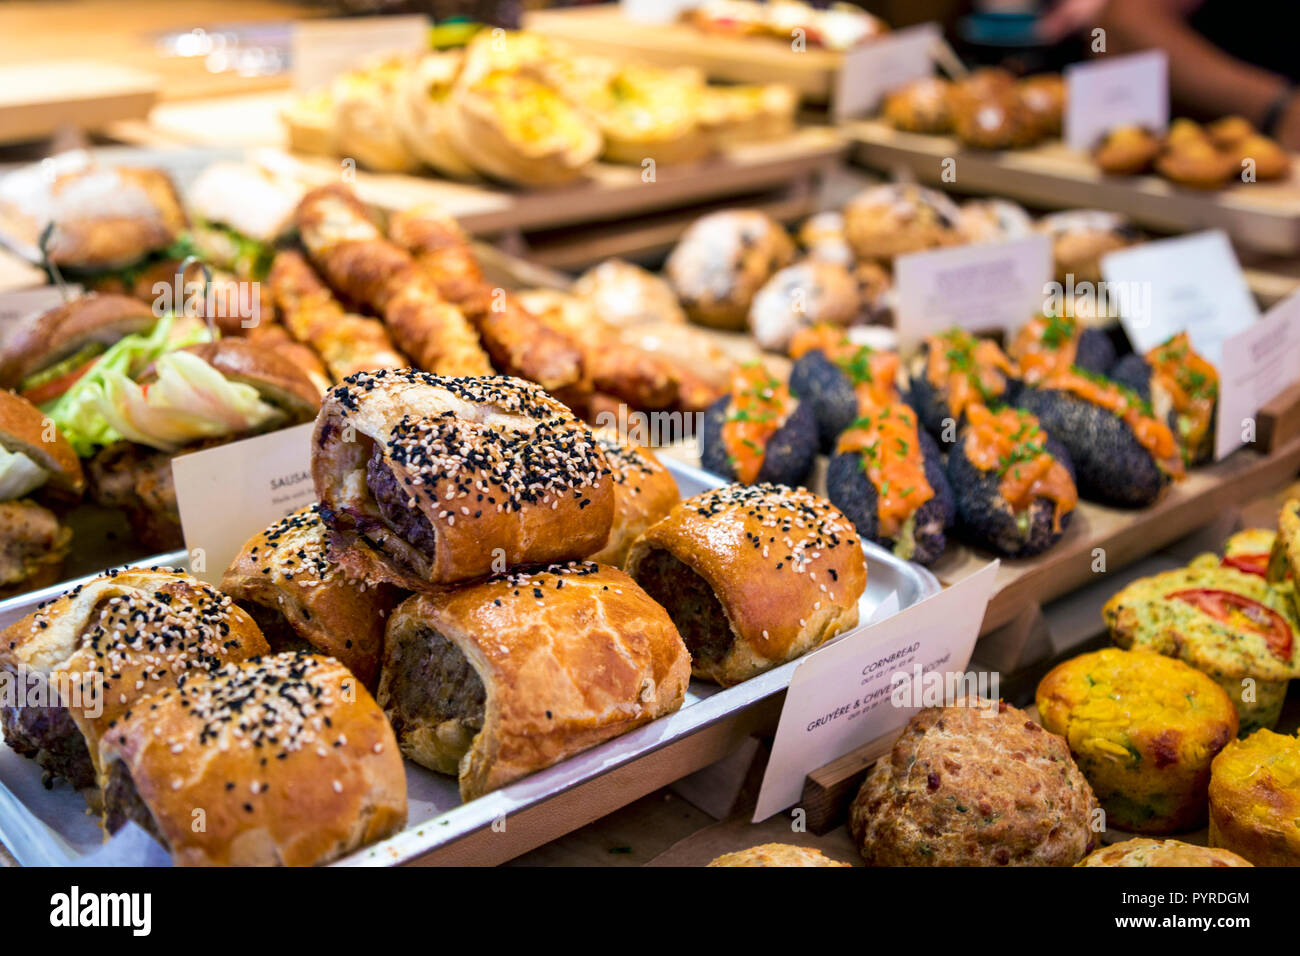 Délicieux rouleaux de saucisses et de pains et des sandwichs dans un café/boulangerie (Gail), London, UK Banque D'Images